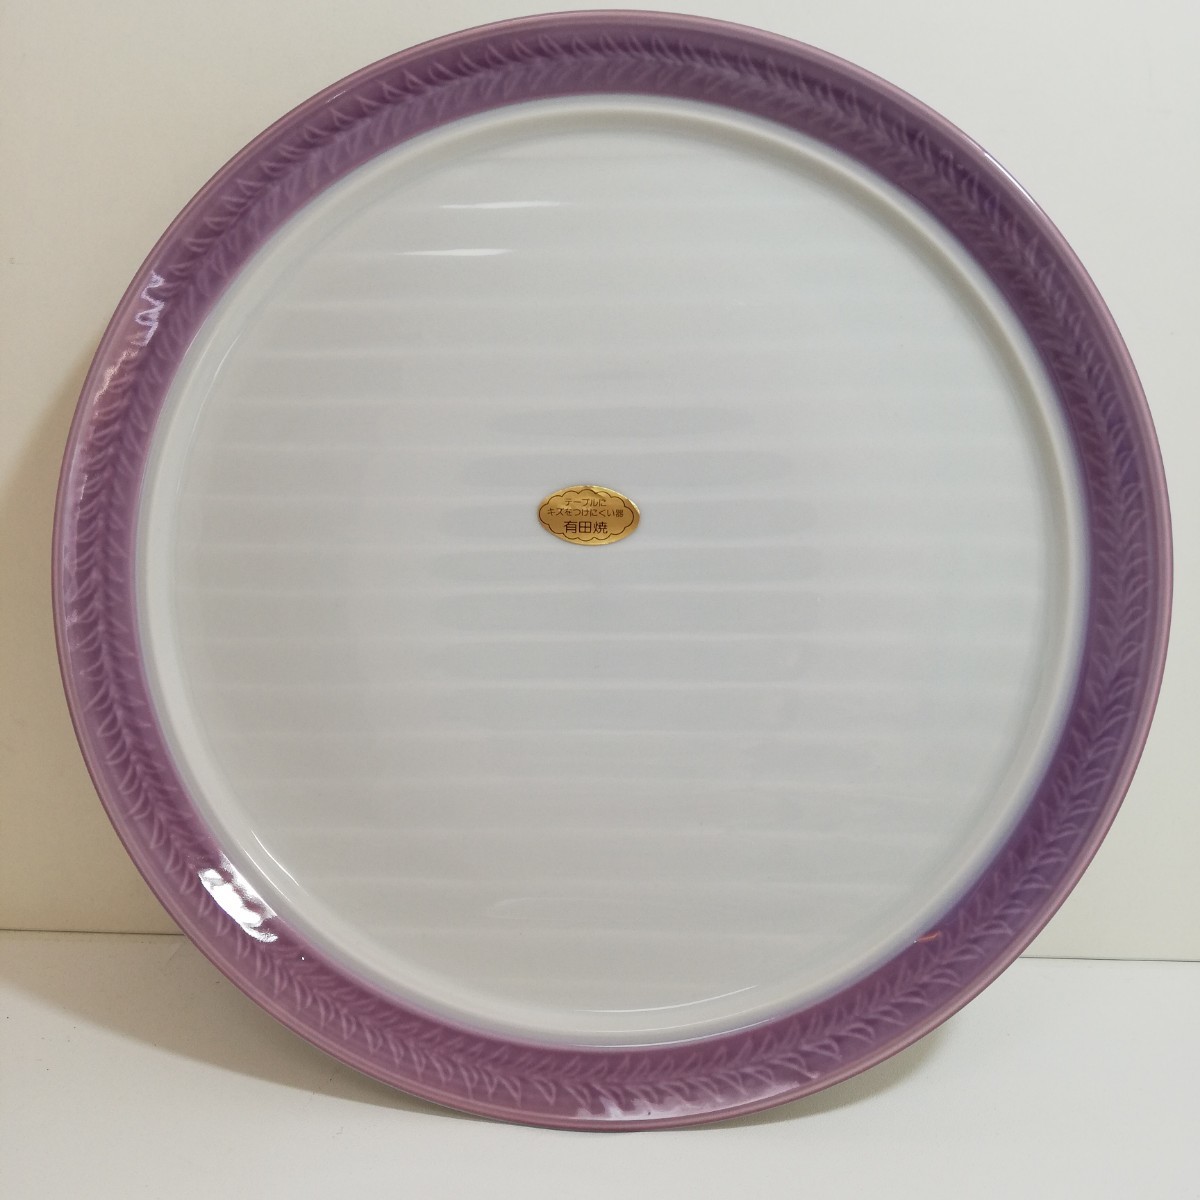 有田焼 華峰 縁紫 和洋皿 直径24.5cm×高さ3cm 未使用品 [和食器 洋食器 中皿 磁器皿 有田 日本美術] の画像1